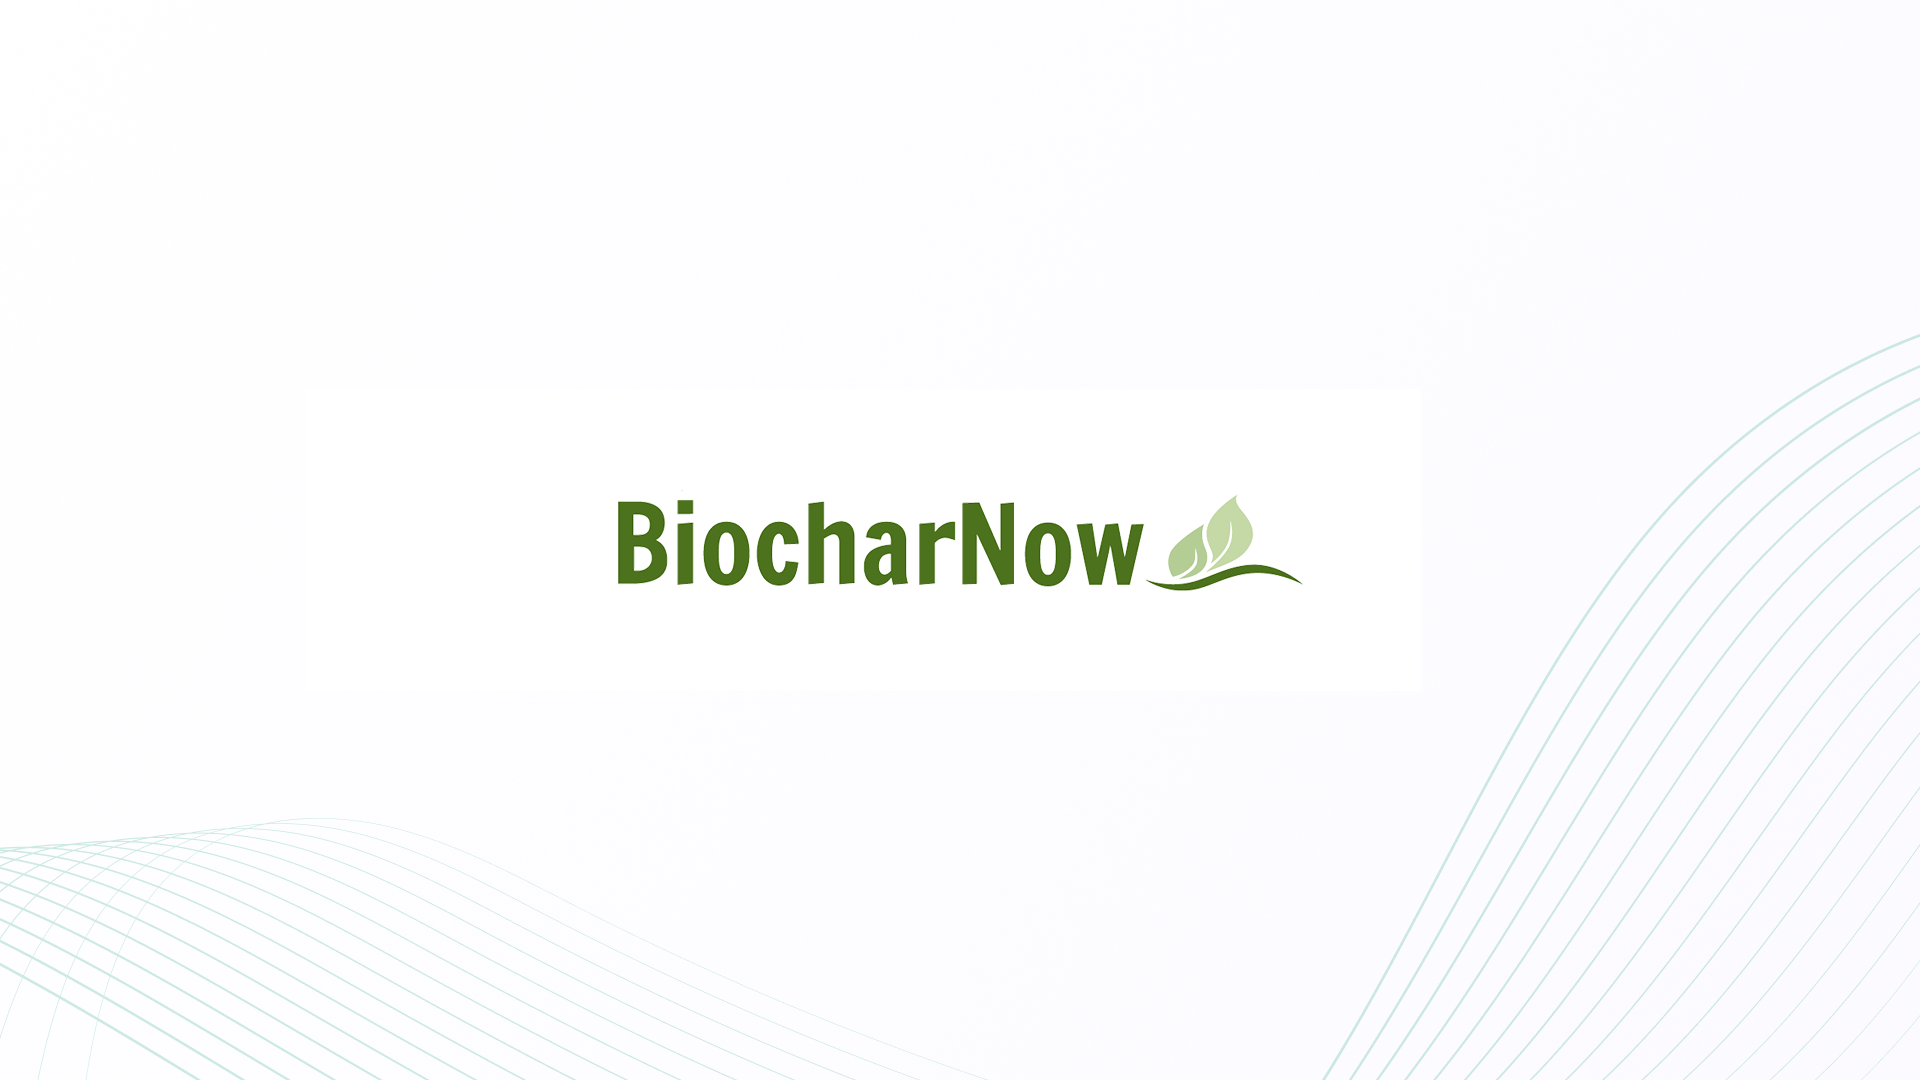 BiocharNow | Proton June #BetterBlockchain